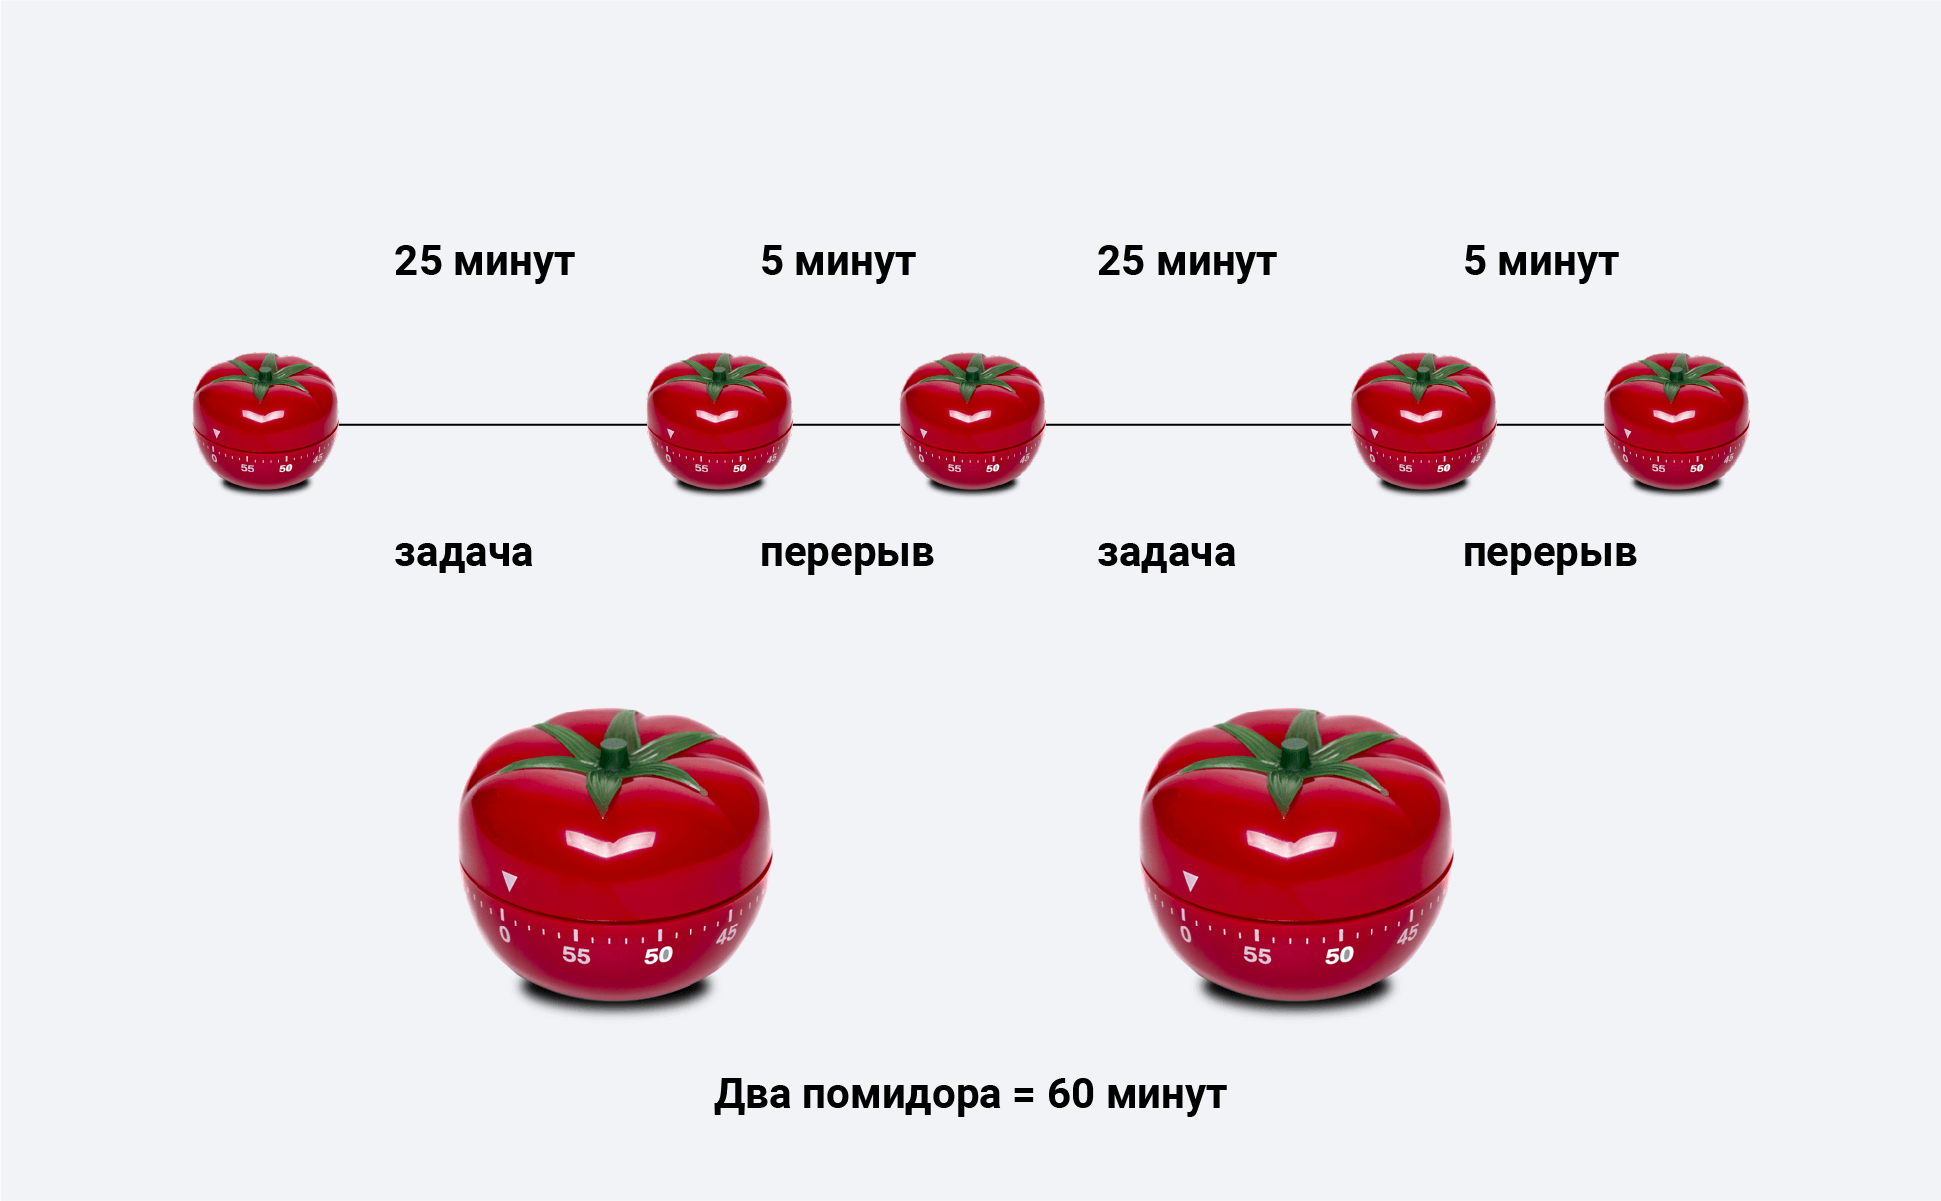 Изображение разбиения своего времени на помидорки. Источник: skillbox.ru